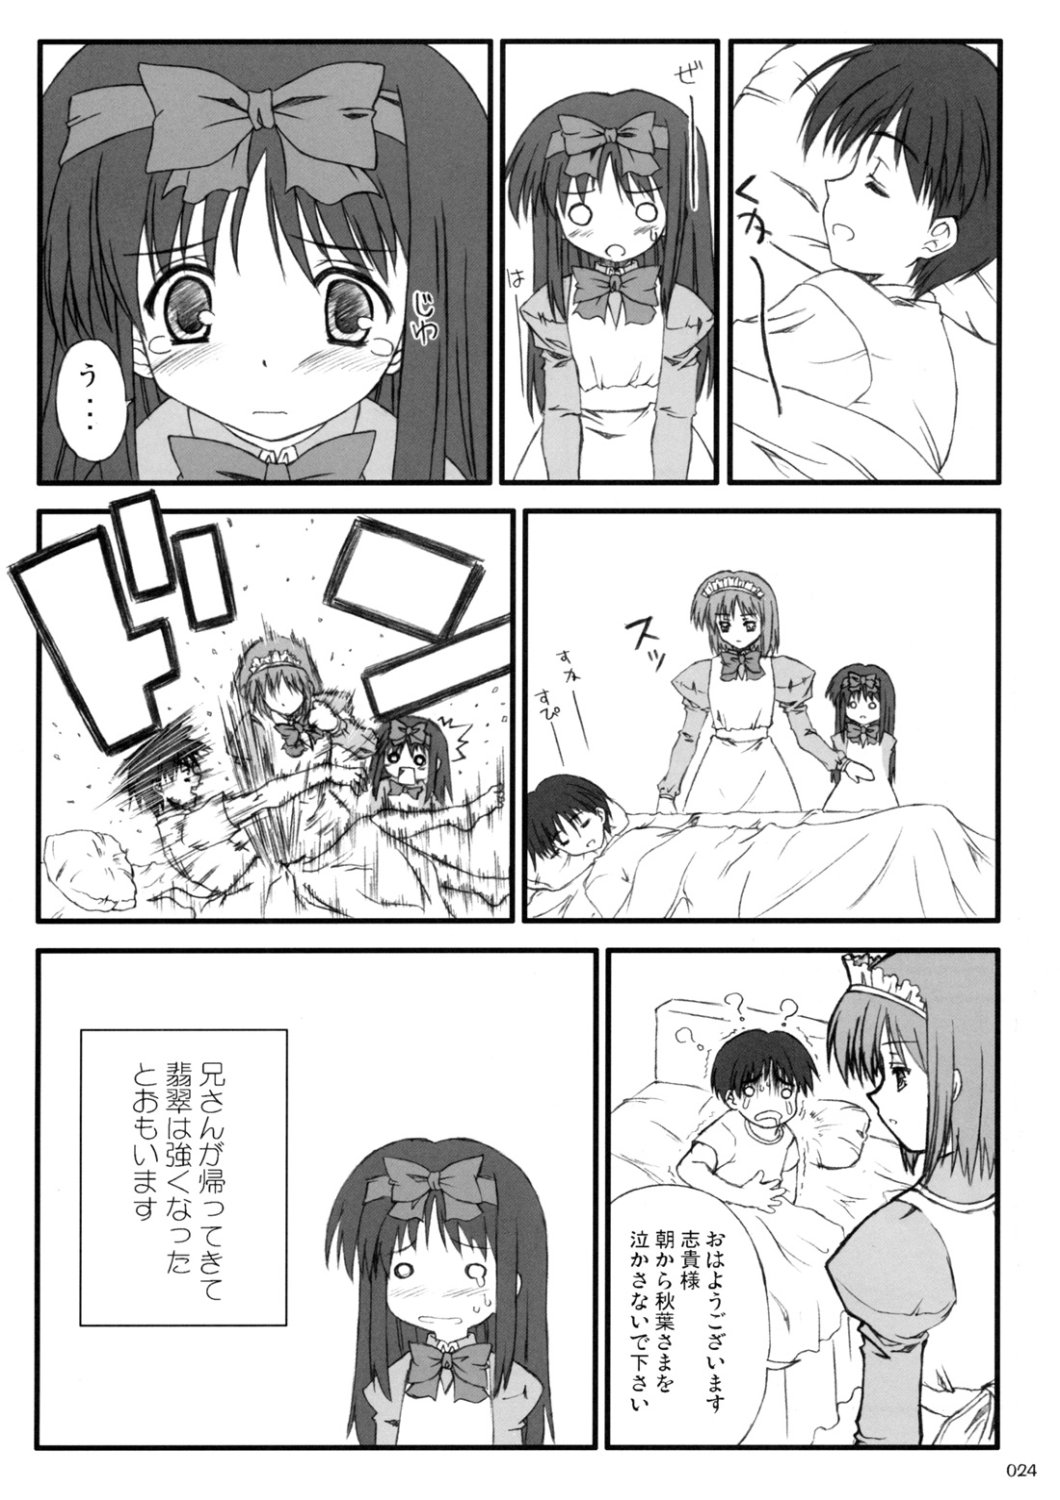 [Inochi no Furusato, Neko-bus Tei, Zangyaku Koui Teate] Akihamania [AKIHA MANIACS] (Tsukihime) page 23 full